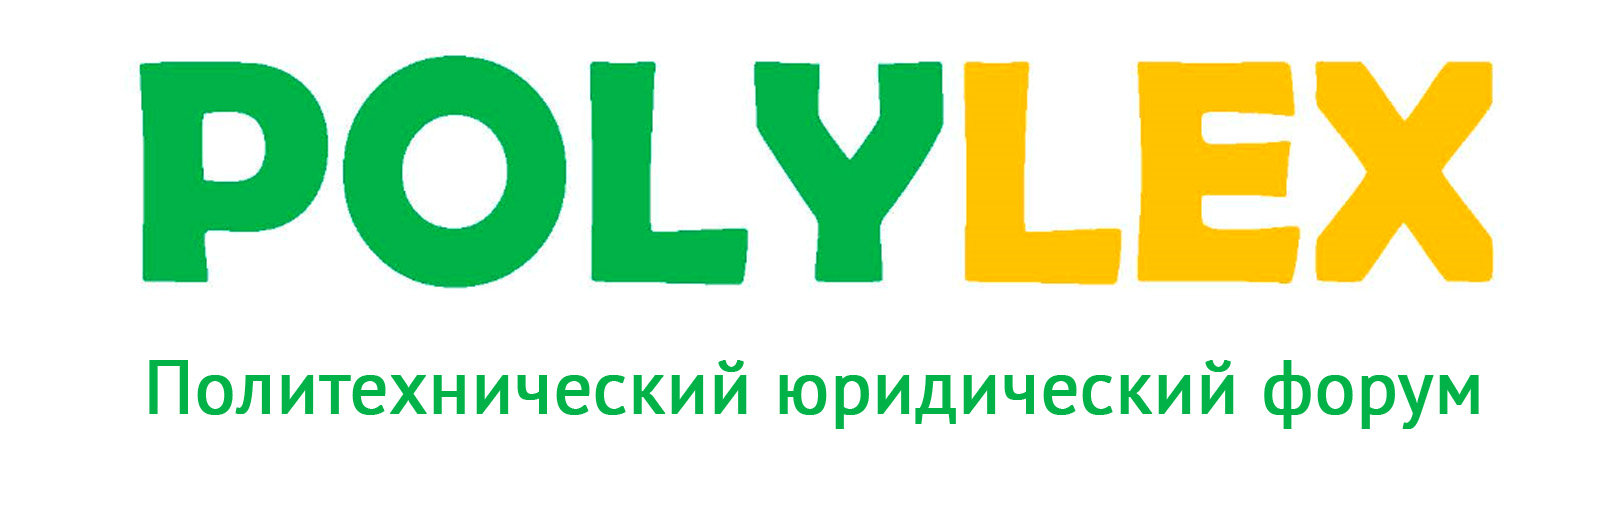 PolyLex